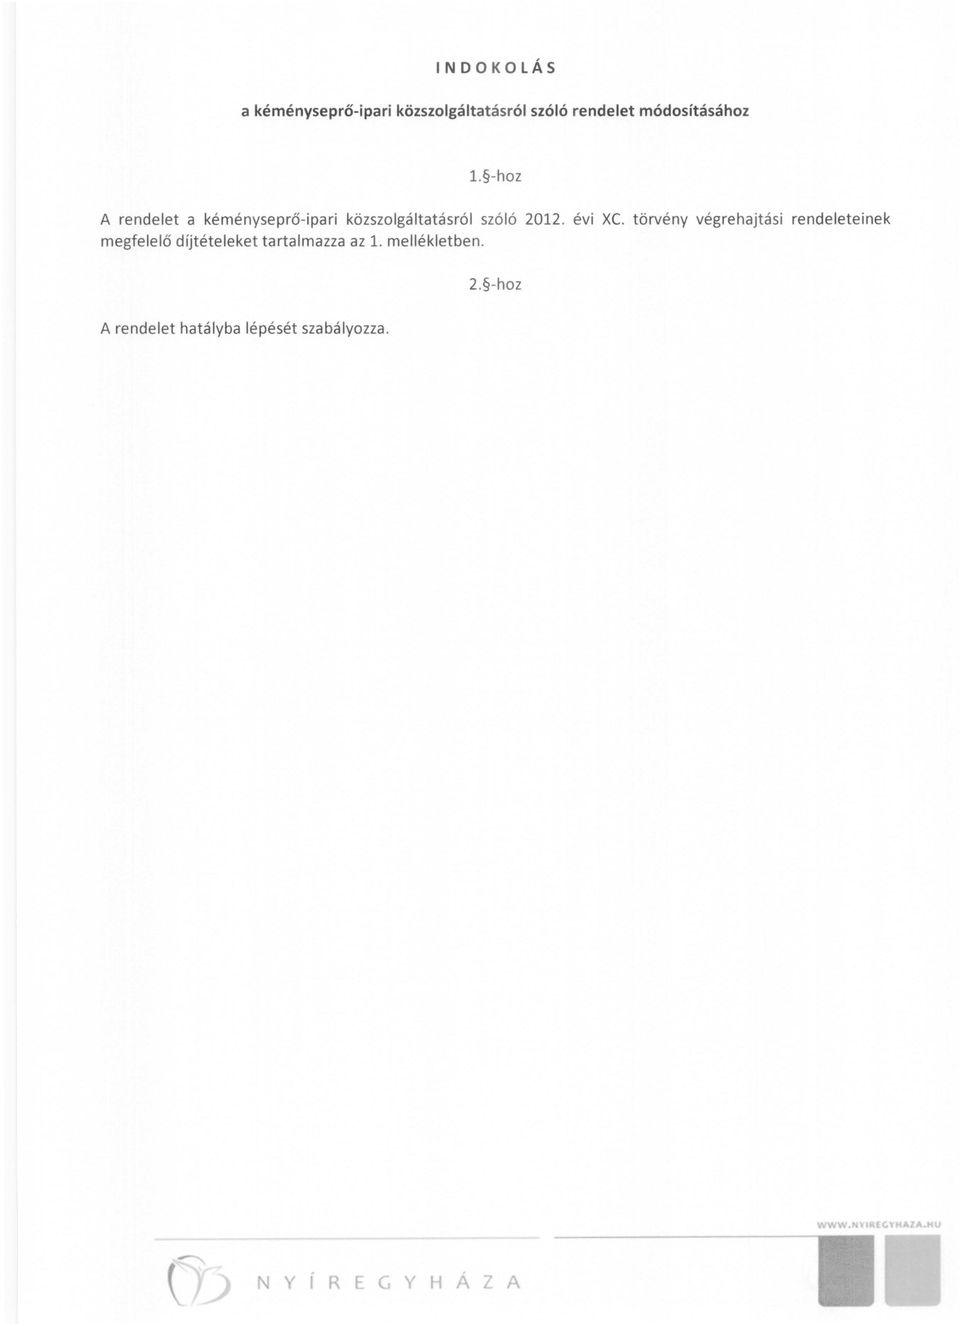 -hoz A rendelet a kéményseprő - ipari közszolgáltatásról szóló 2012. évi Xc.